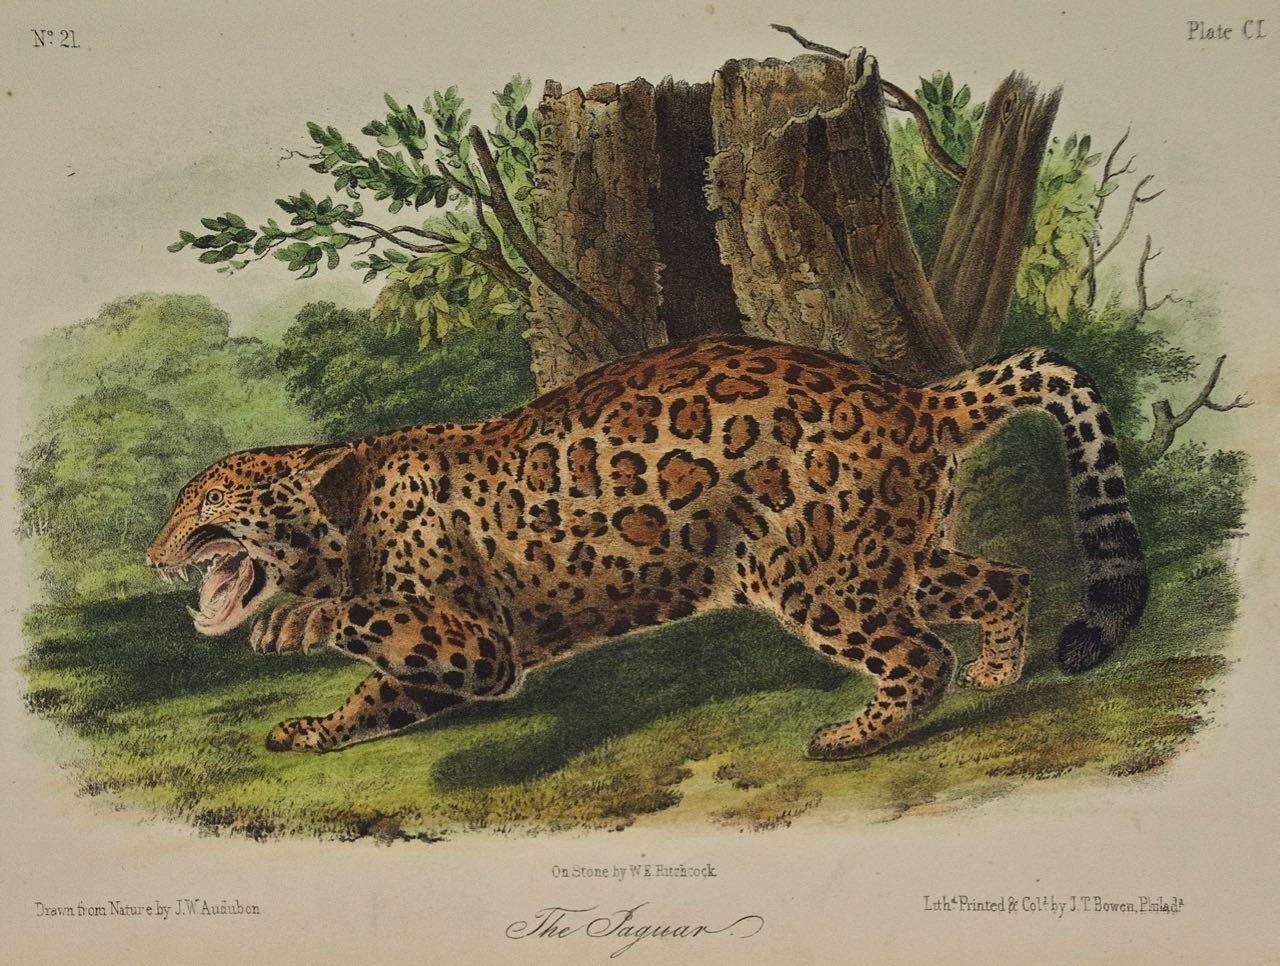 « The Jaguar », une lithographie quadrillée originale d'Audubon du 19e siècle colorée à la main  - Print de John James Audubon